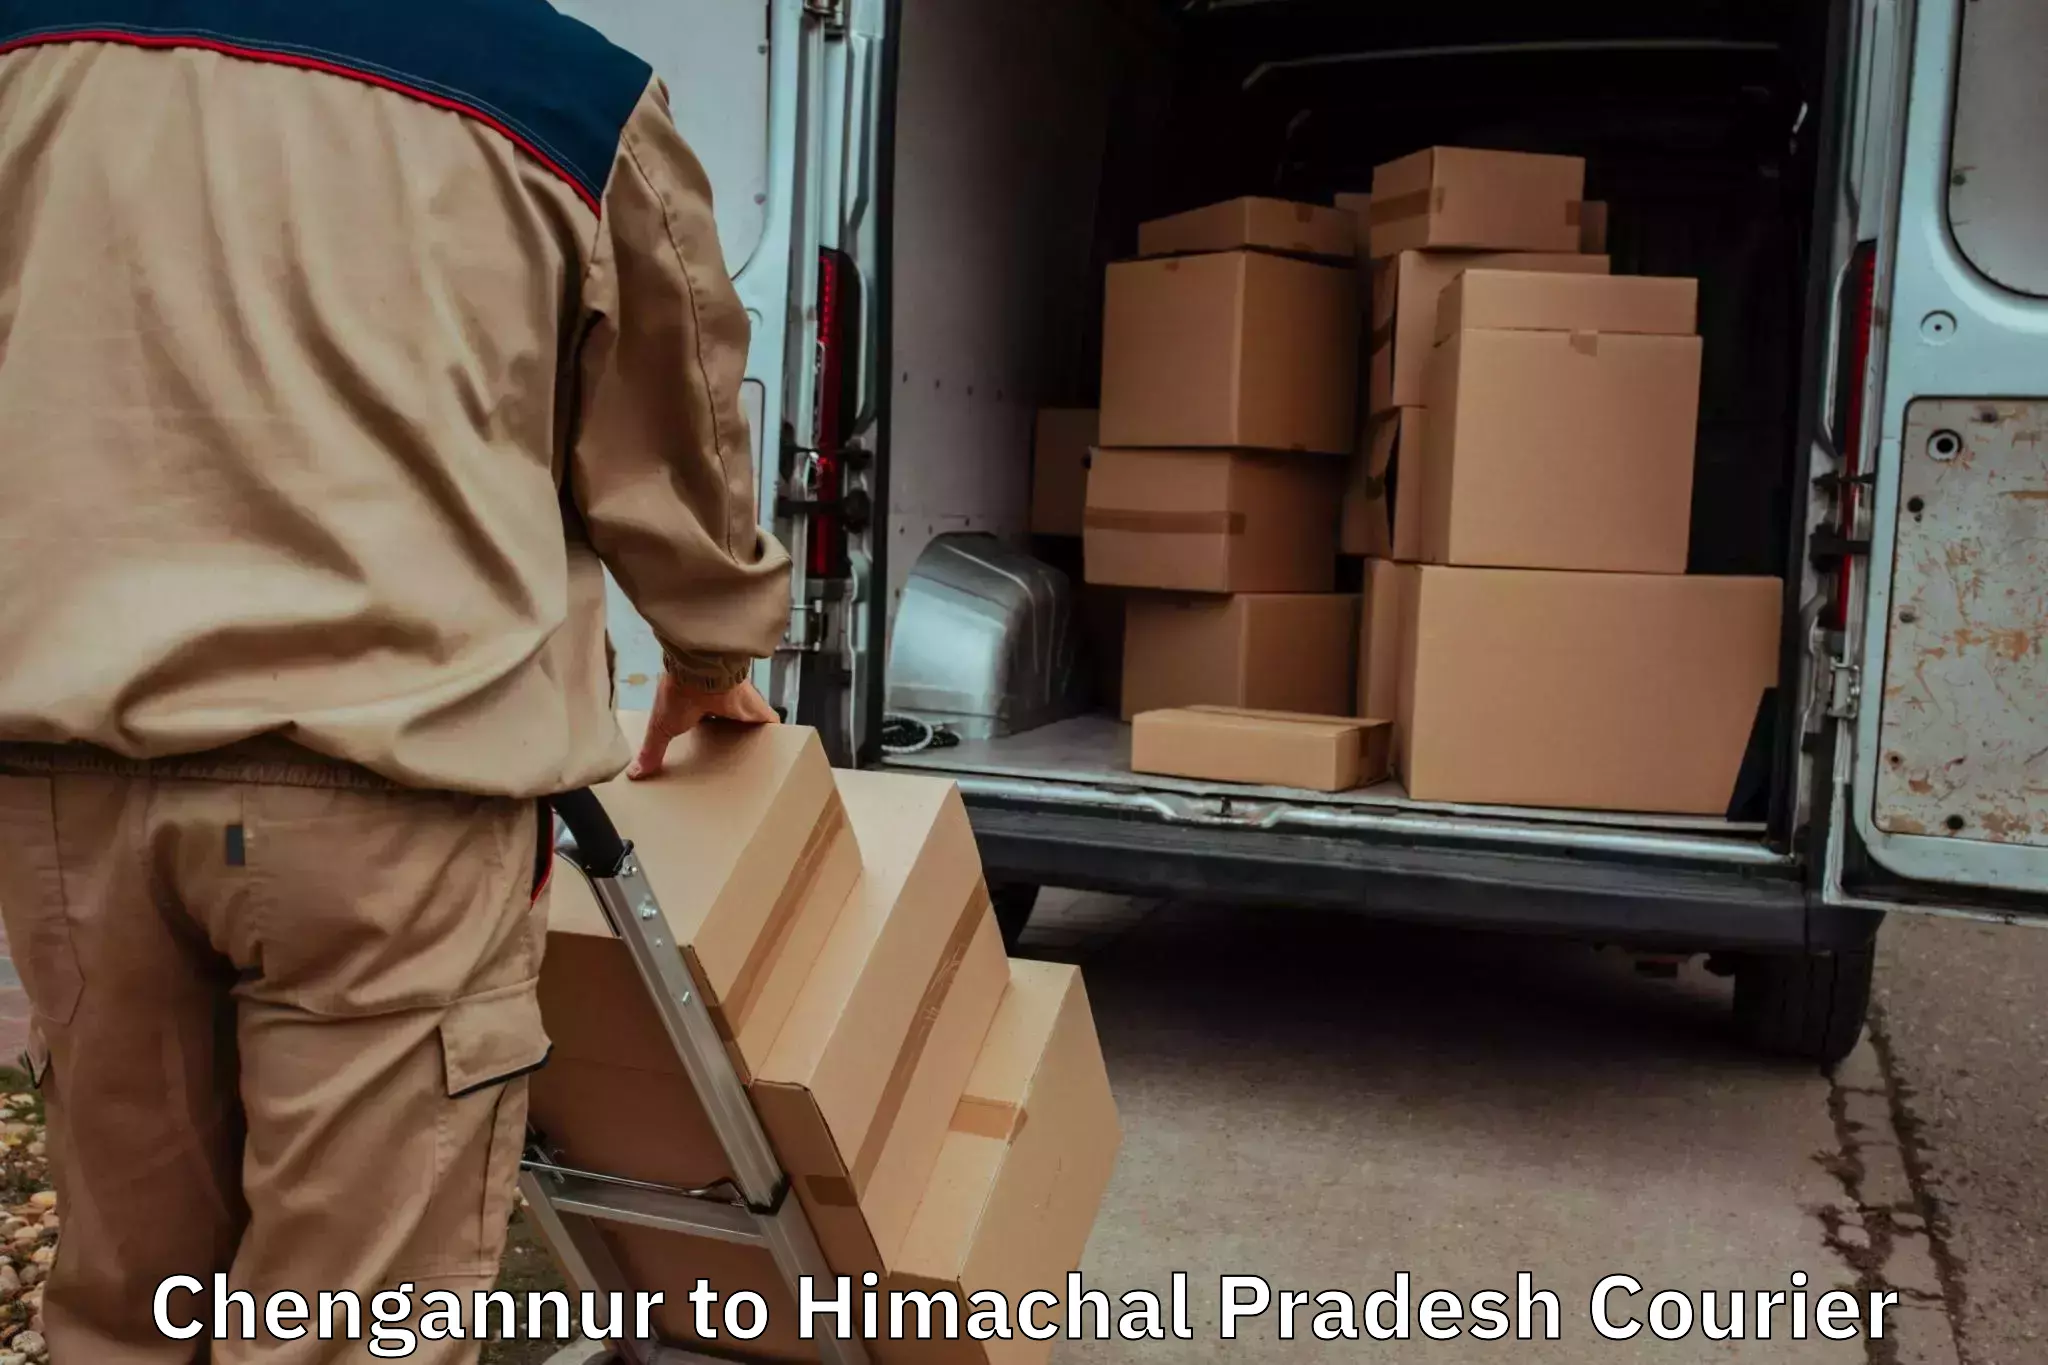 Furniture transport professionals Chengannur to Indora